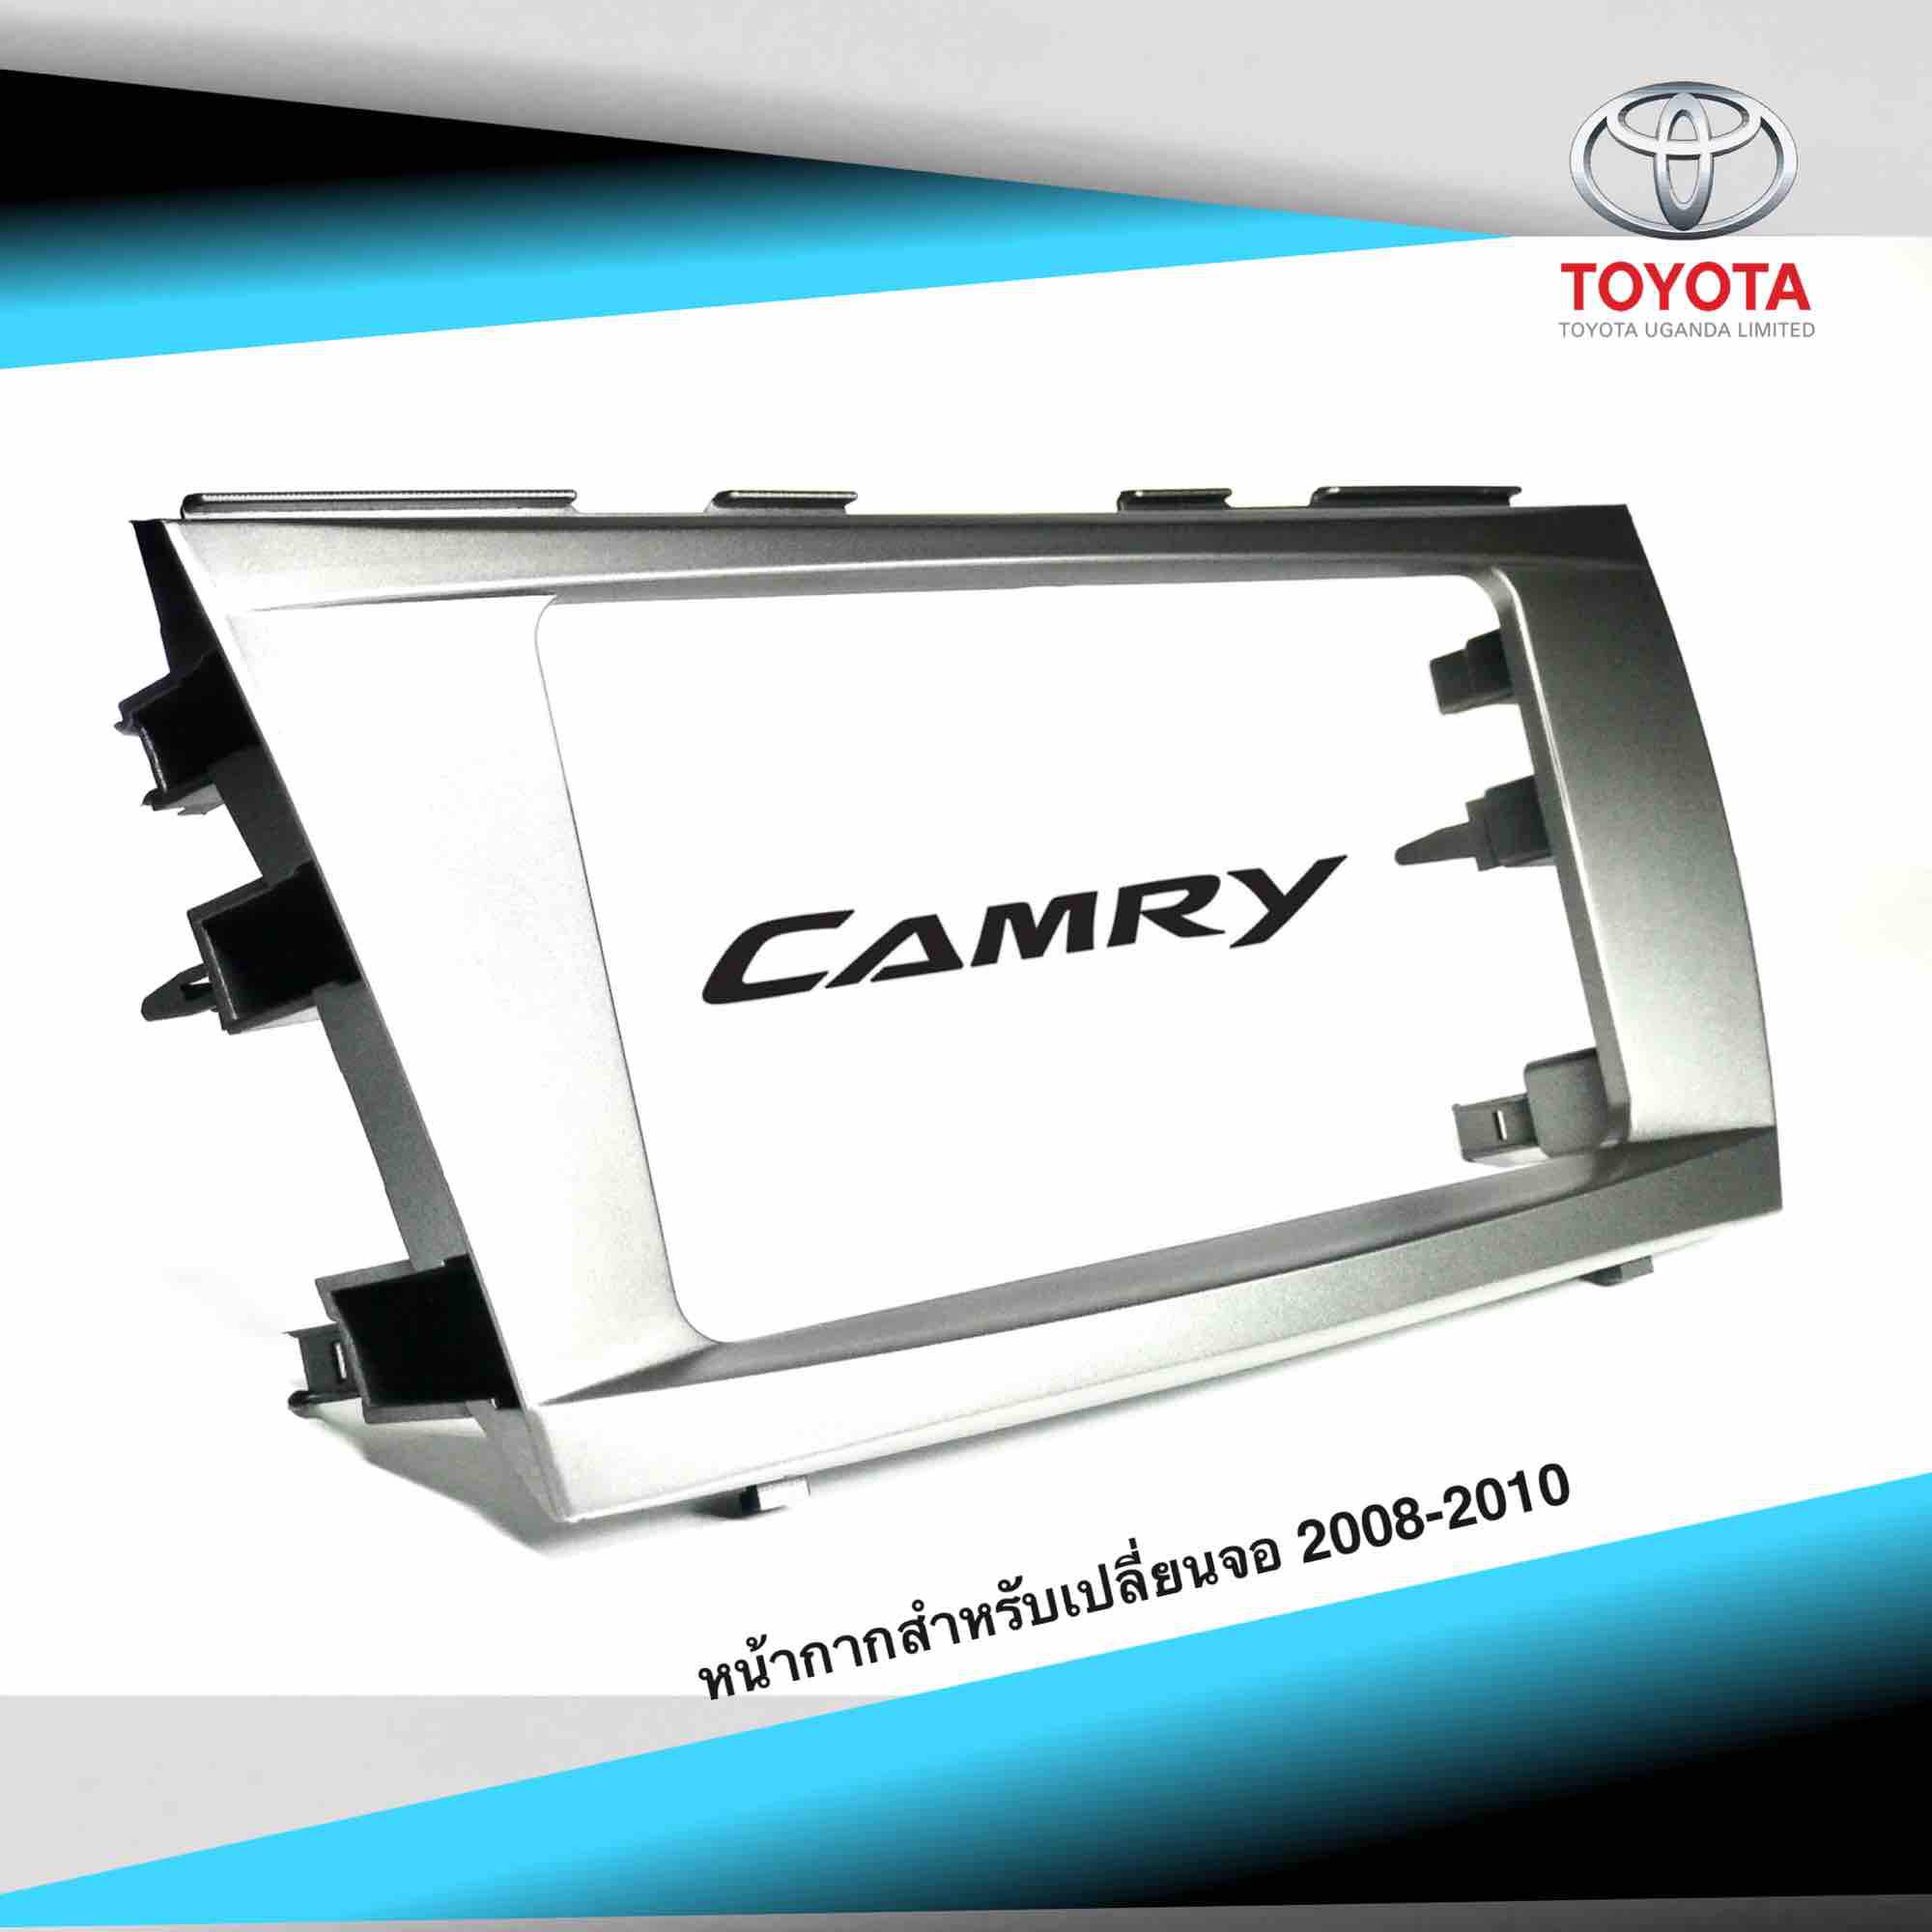 หน้ากากสำหรับเปลี่ยนจอ รถ TOYOTA CAMRY2008-2010 สามารถใช้ร่วมกับจอทุกยี่ห้อ งานเกรดA ติดตั้งง่าย สวยงามลงตัว